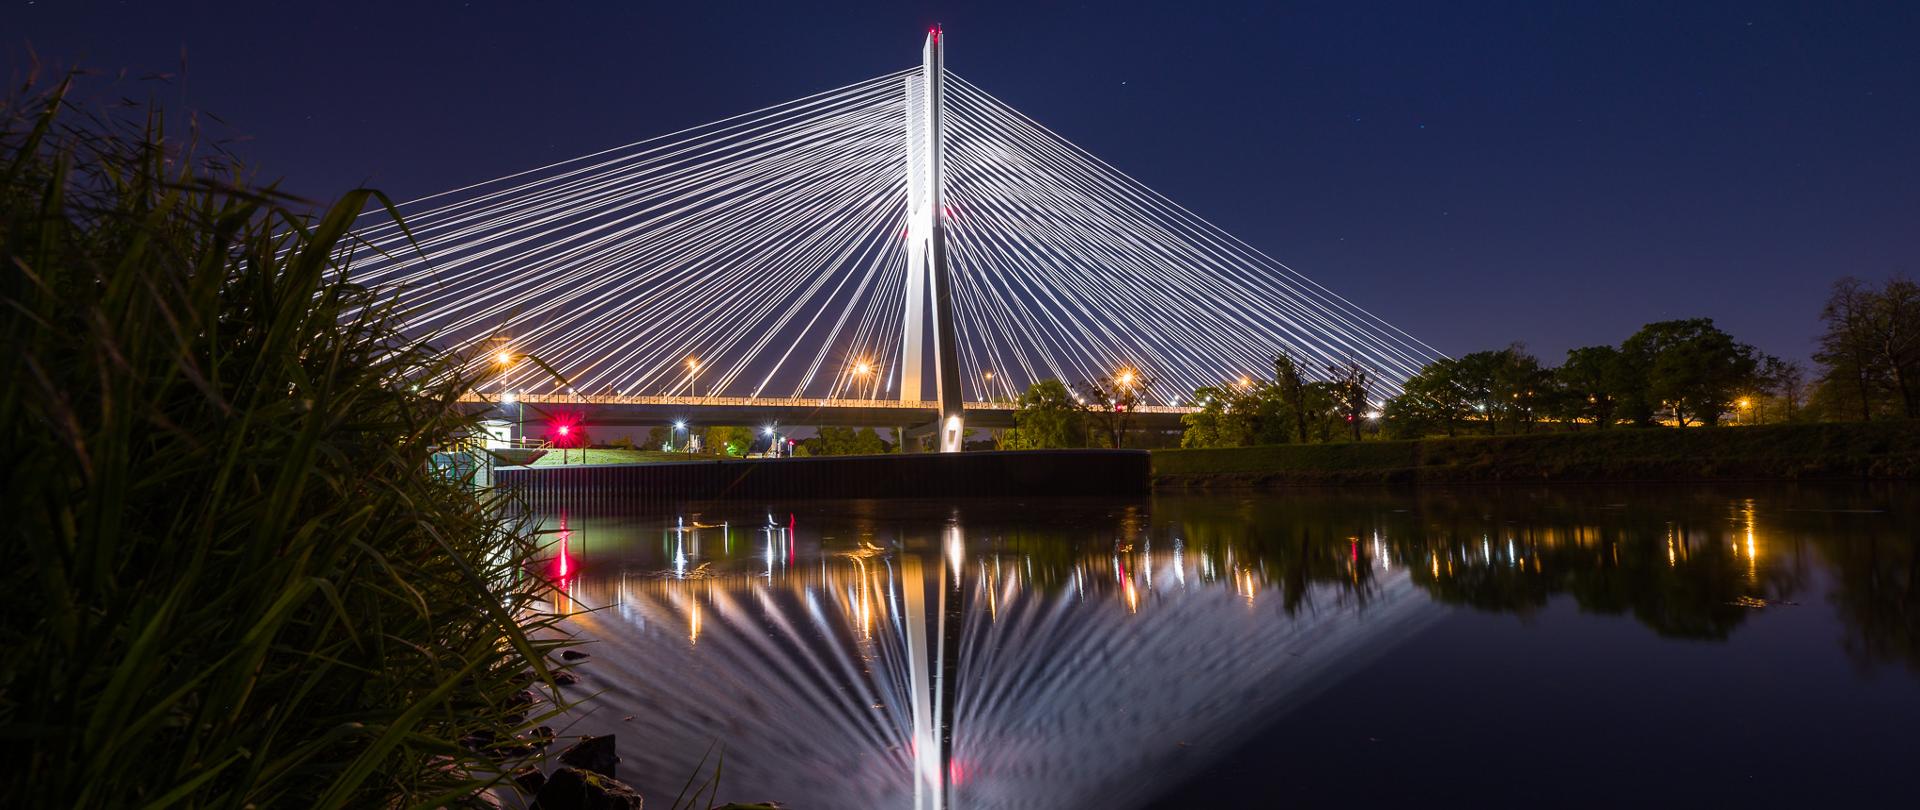 Podświetlony Most Rędziński w nocy. Zdjęcie z poziomu rzeki. Na rzece malowniczo odbijają się elementy mostu.